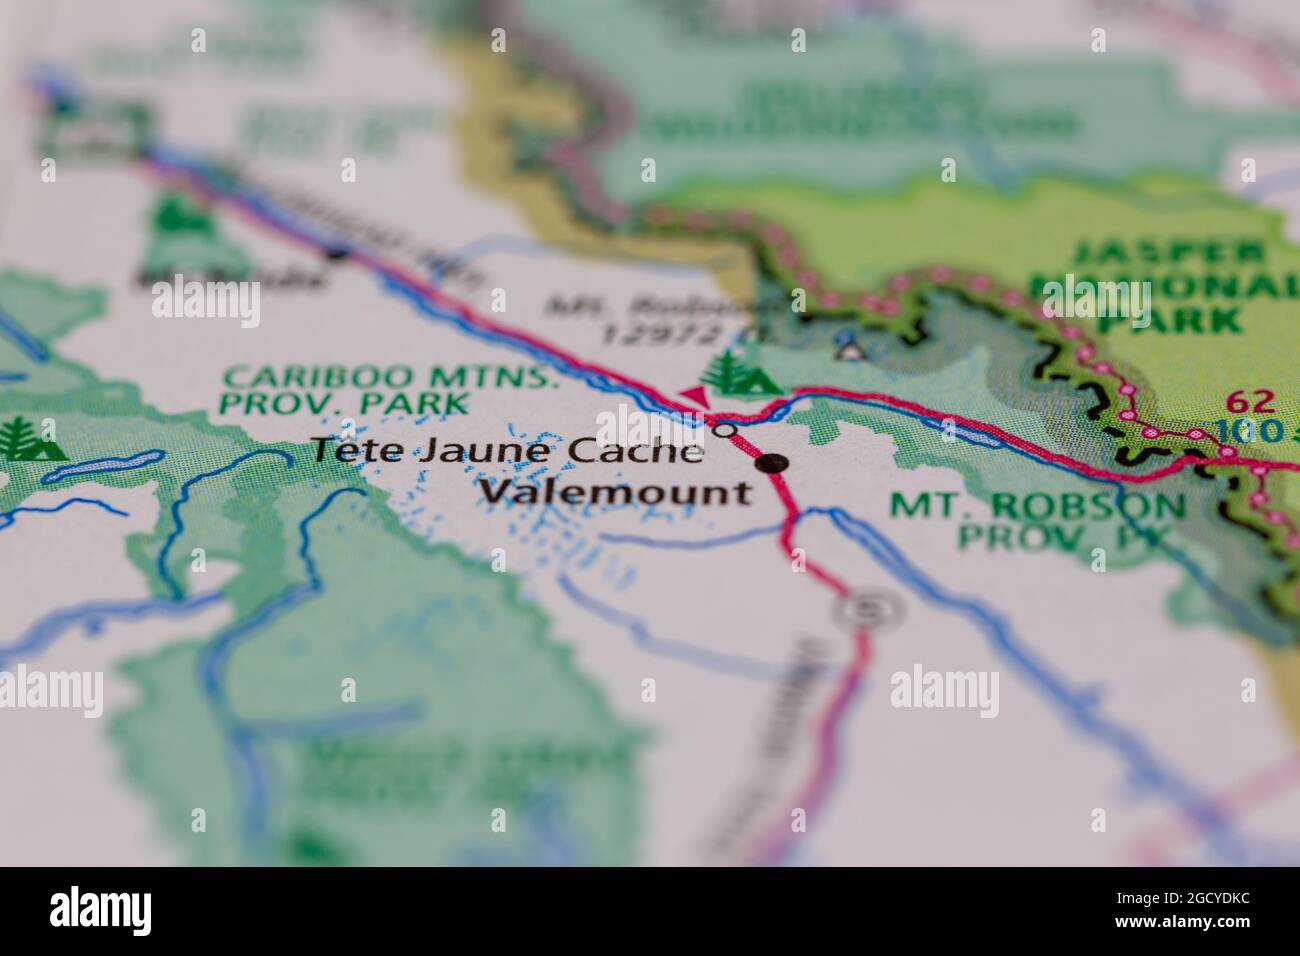 Tete Jaune Cache British Columbia Kanada auf einer Straßenkarte oder Geographie-Karte angezeigt Stockfoto